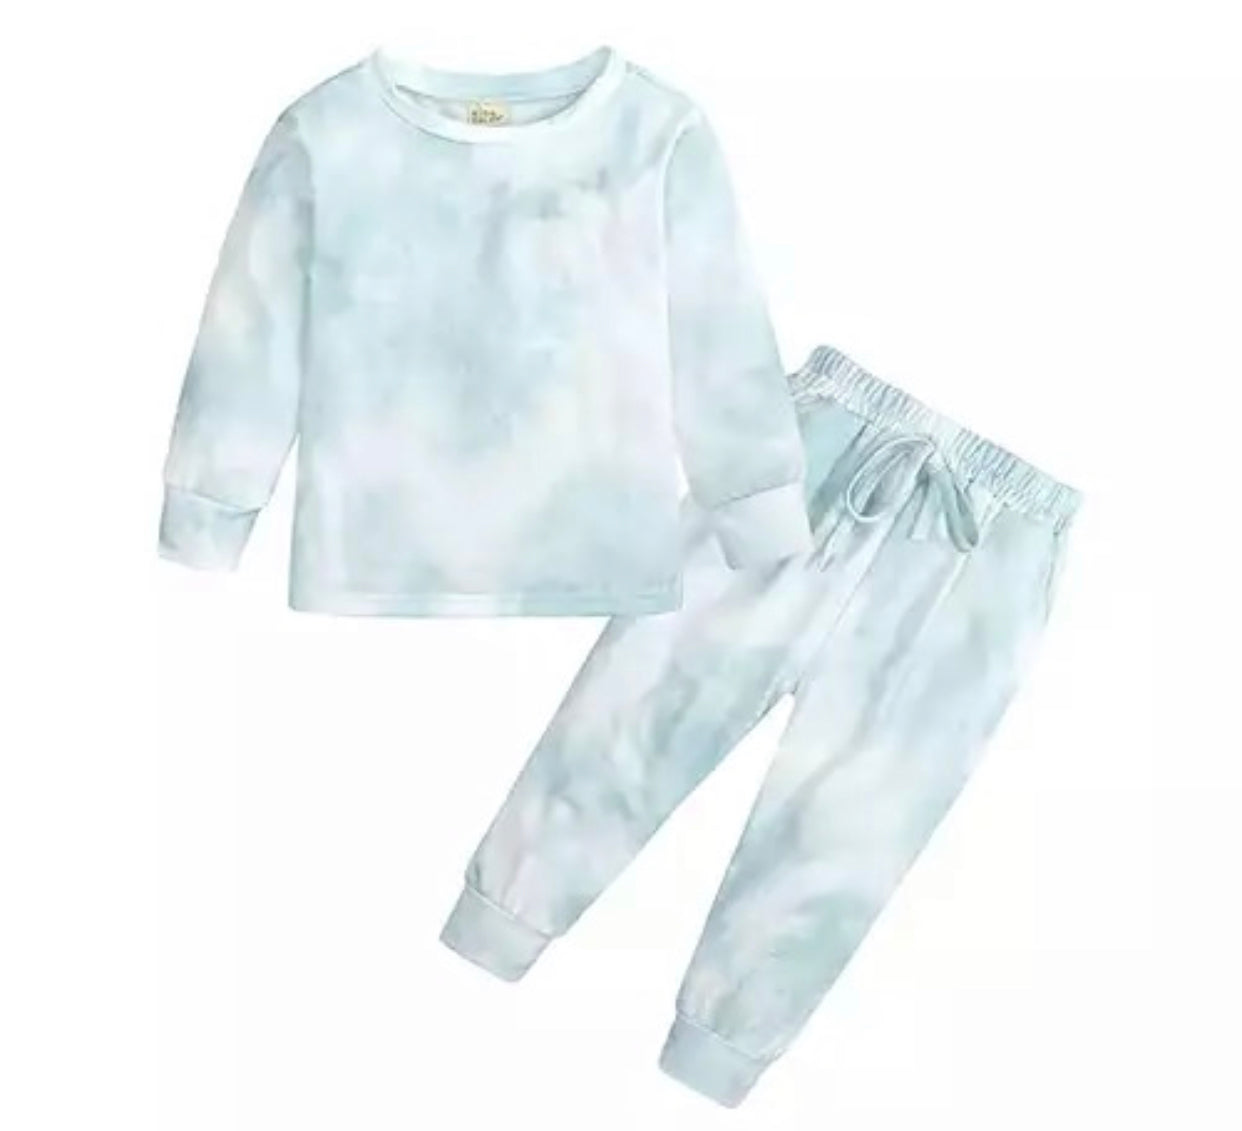 Loungewear   Mint Tie Dye   Kids /Adults